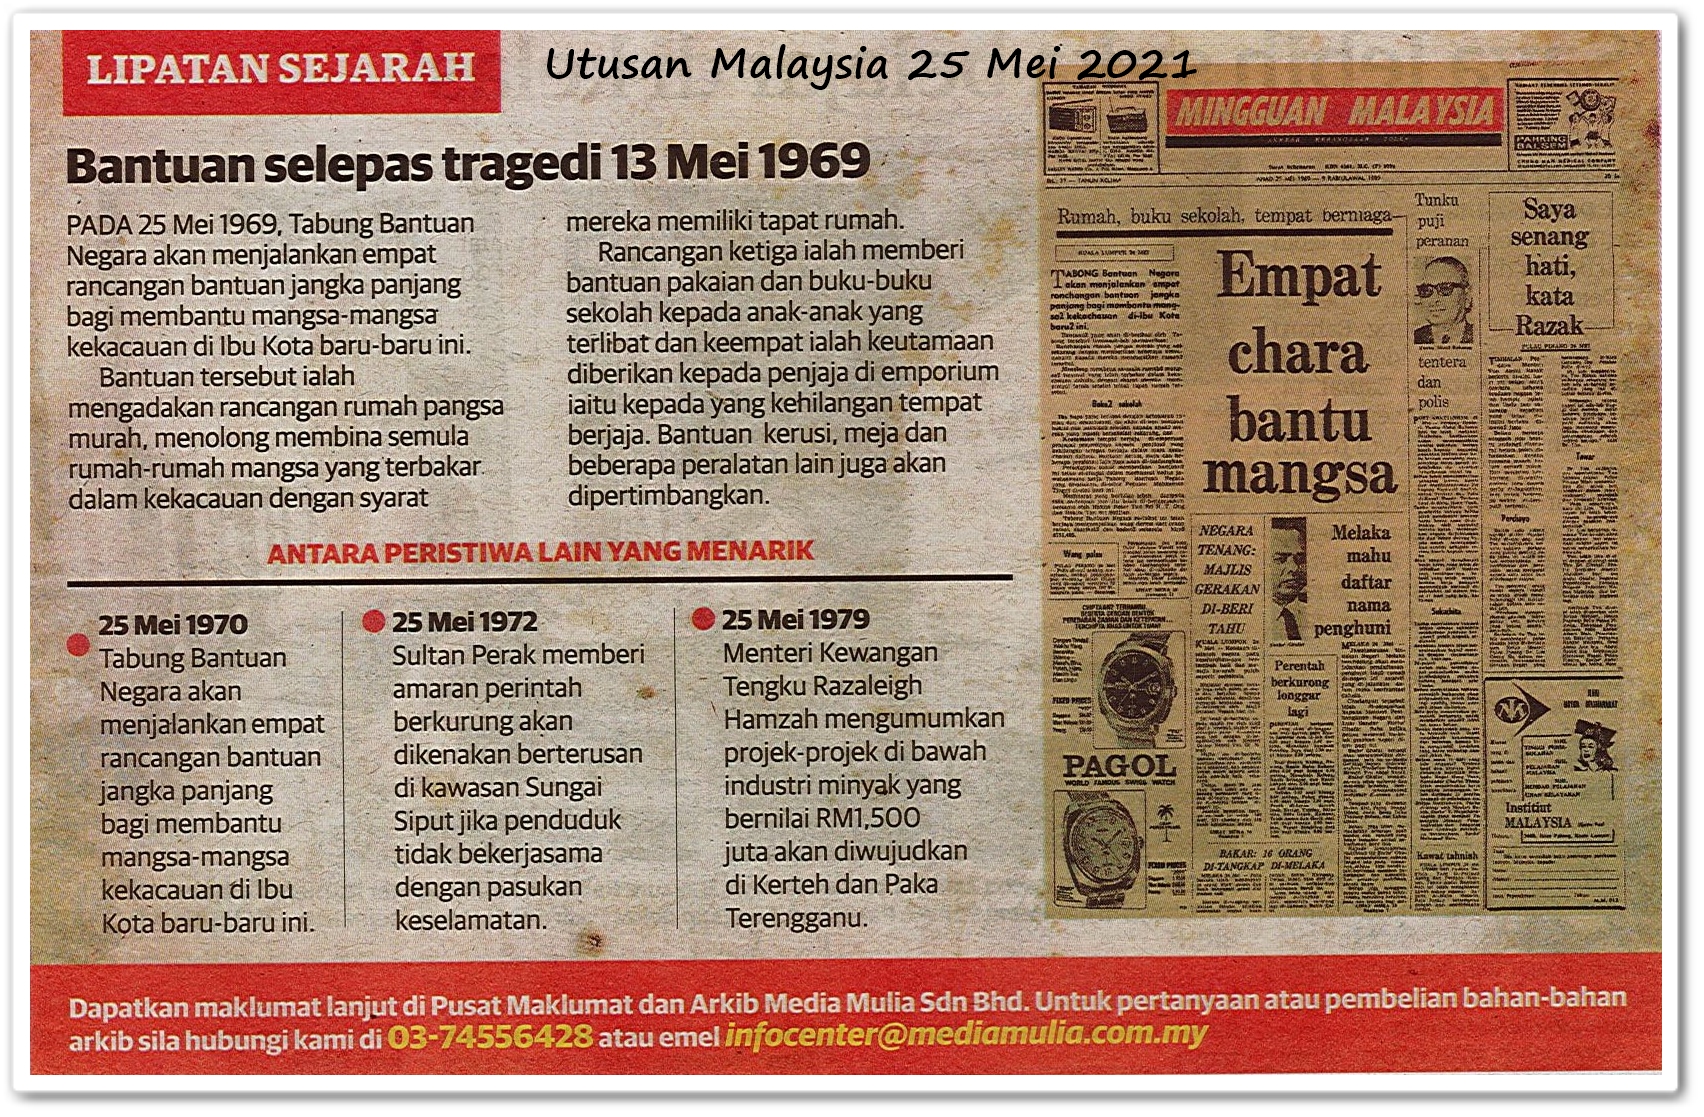 Lipatan sejarah 25 Mei - Keratan akhbar Utusan Malaysia 25 Mei 2021